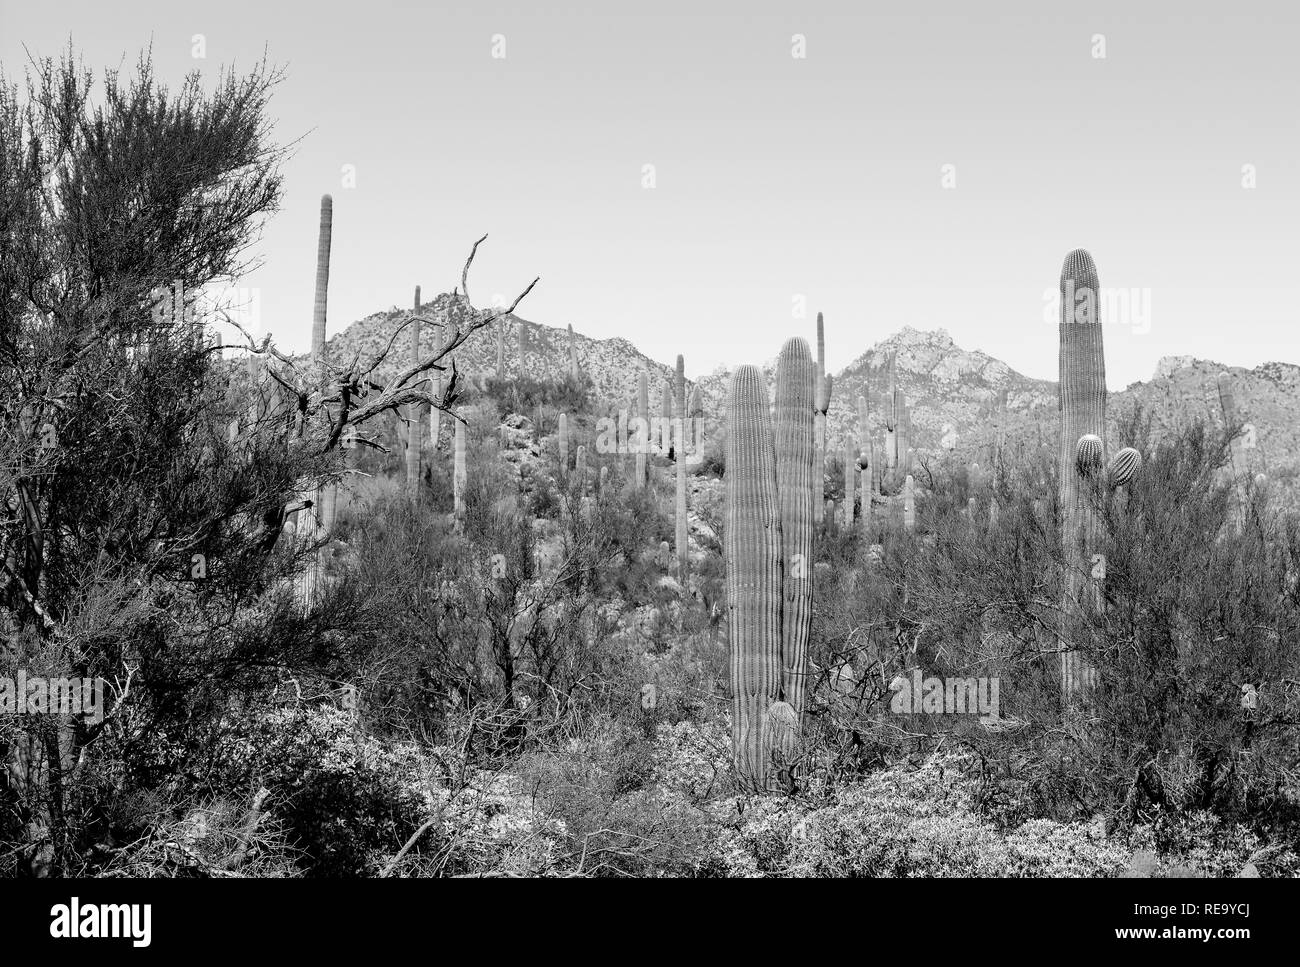 Le saguaro cactus couvrent le domaine de la zone de loisirs de Sabino Canyon situé dans les montagnes Santa Catalina près de Tucson, AZ en noir et blanc Banque D'Images